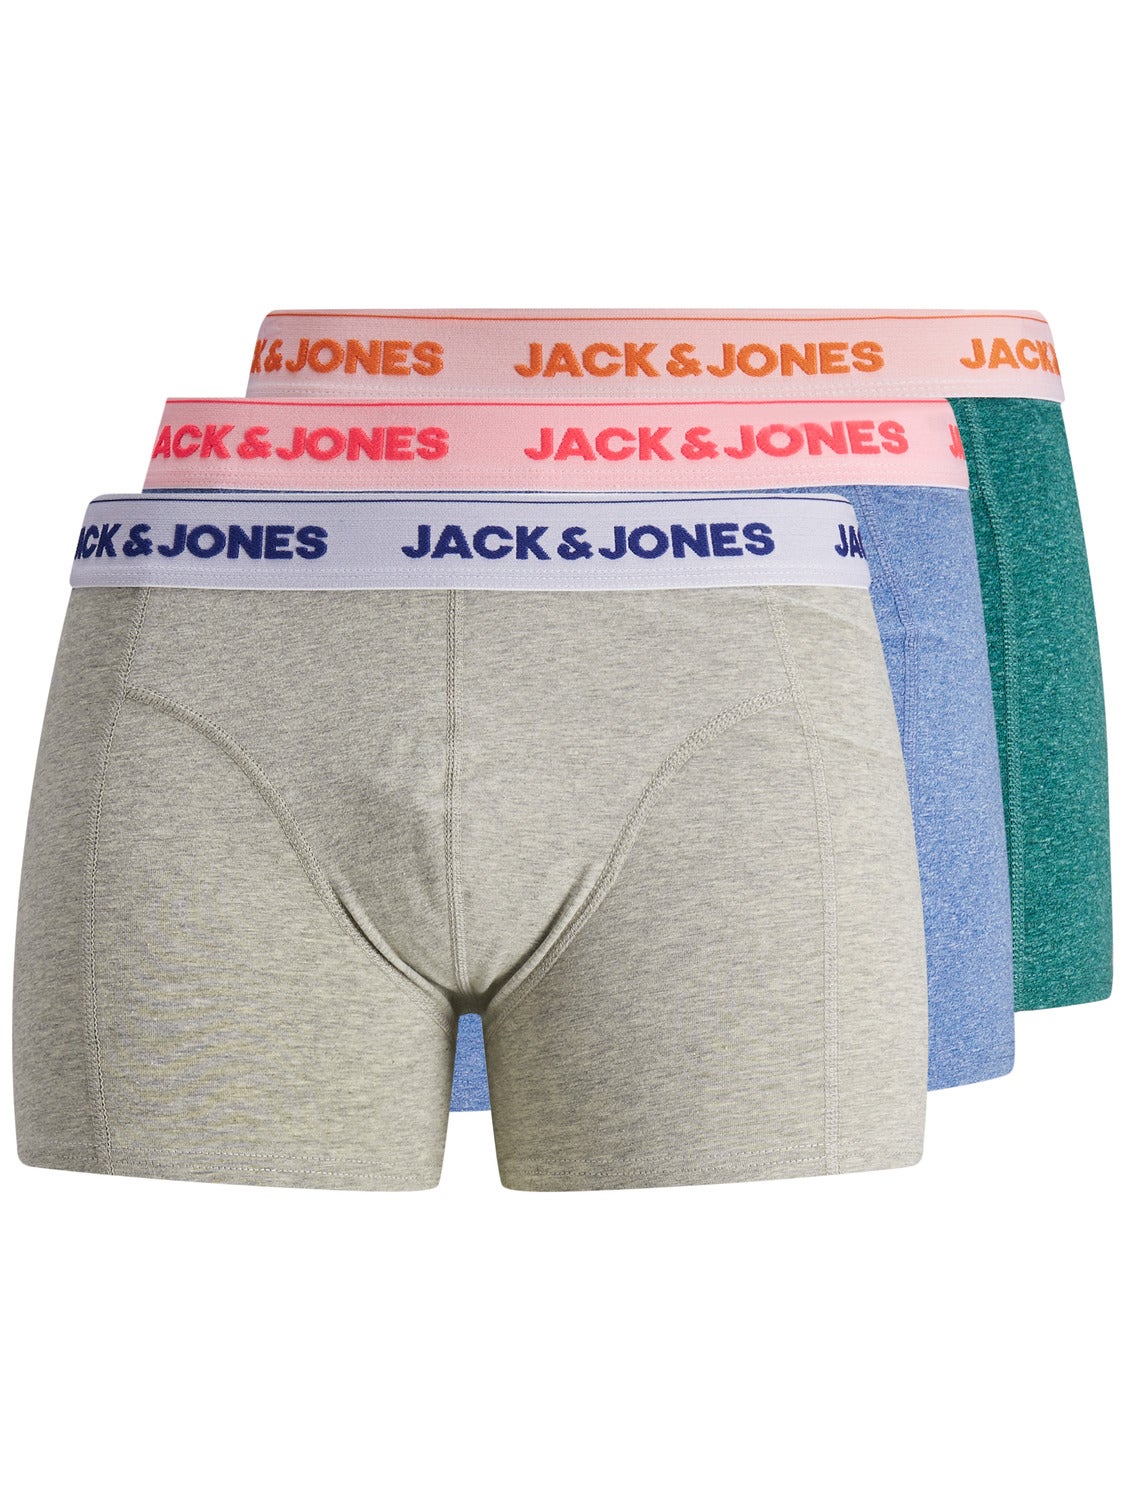 Multicolored L MEN FASHION Underwear & Nightwear discount 56% Jack & Jones Underpant 